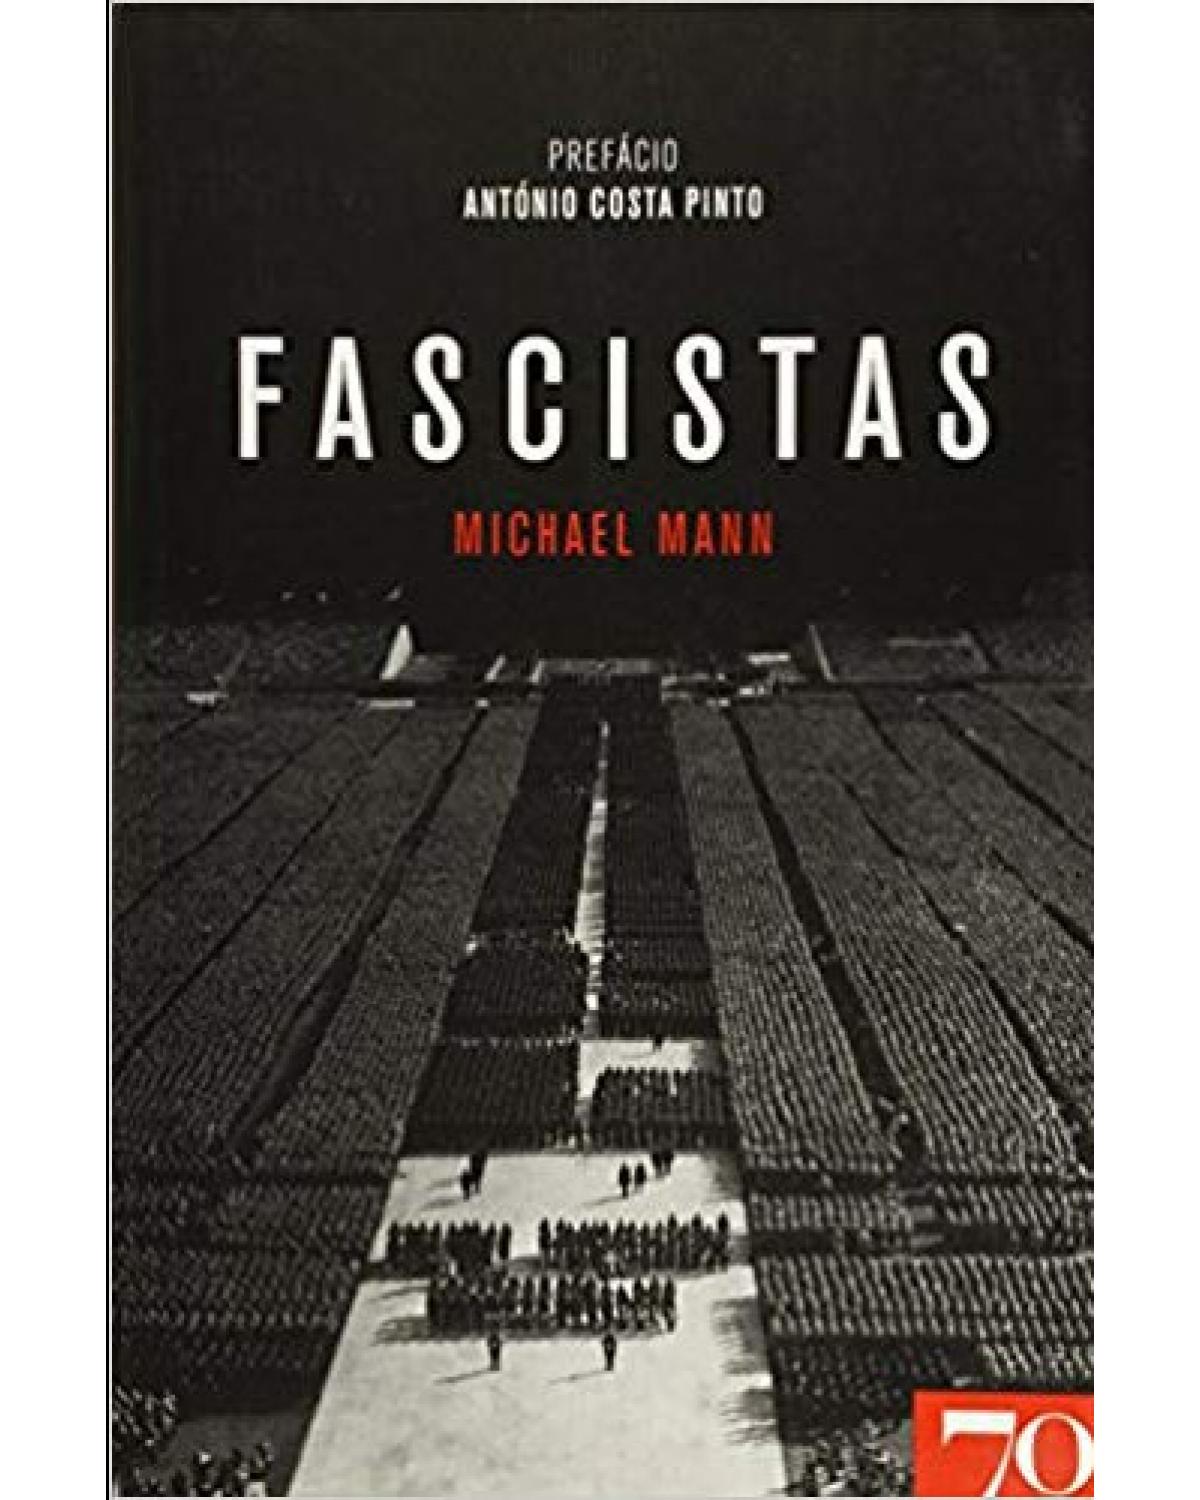 Fascistas - 1ª Edição | 2011